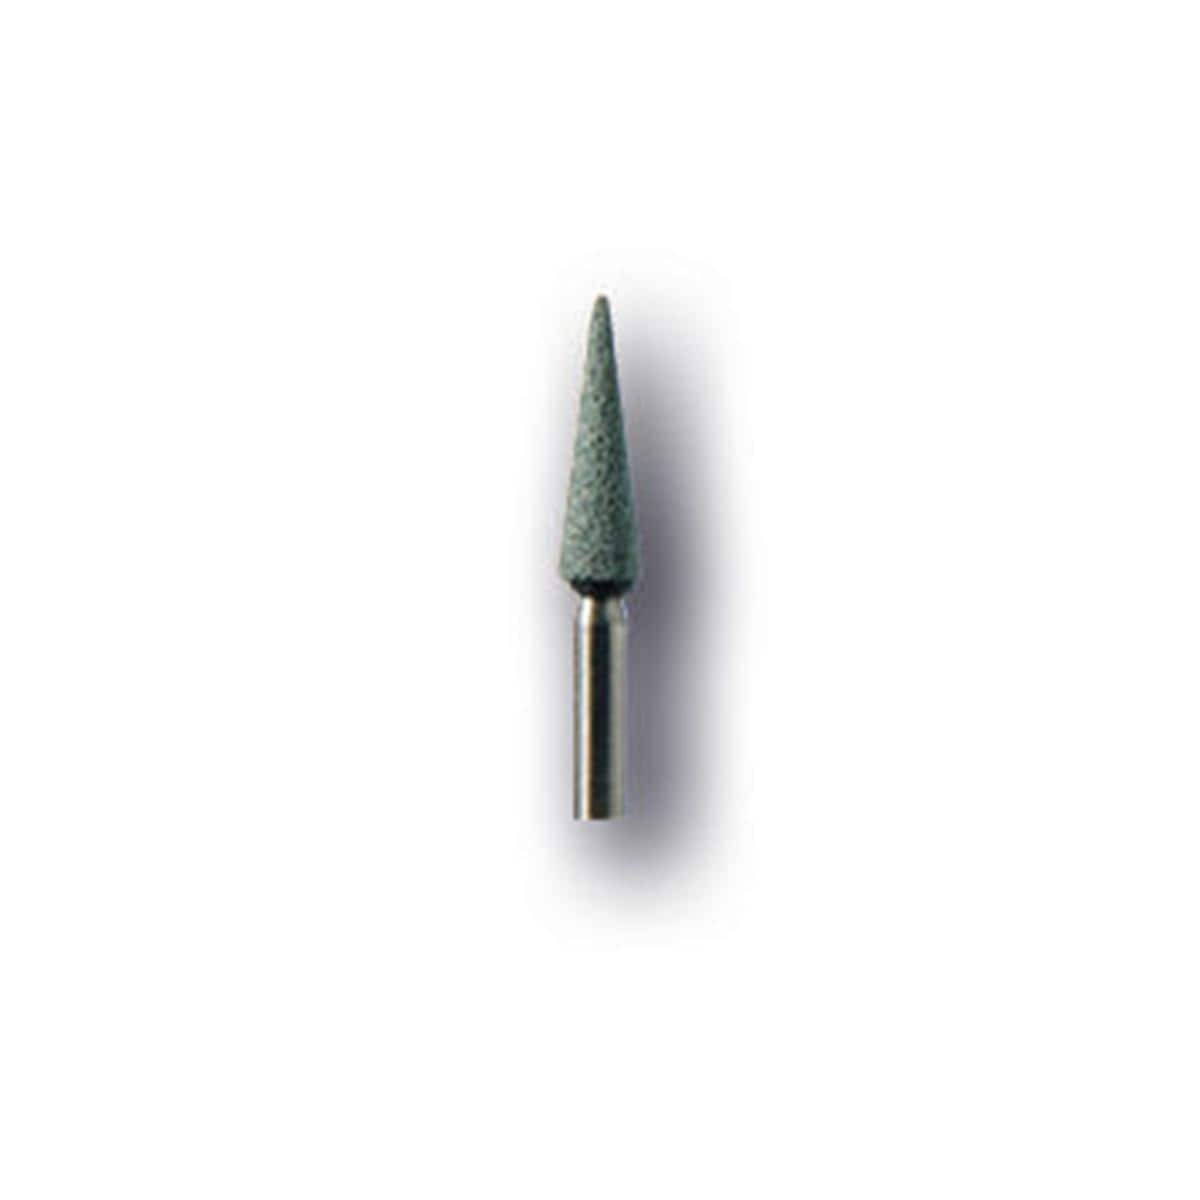 Pierres carborundum fins - Conique pointue CA 645 F